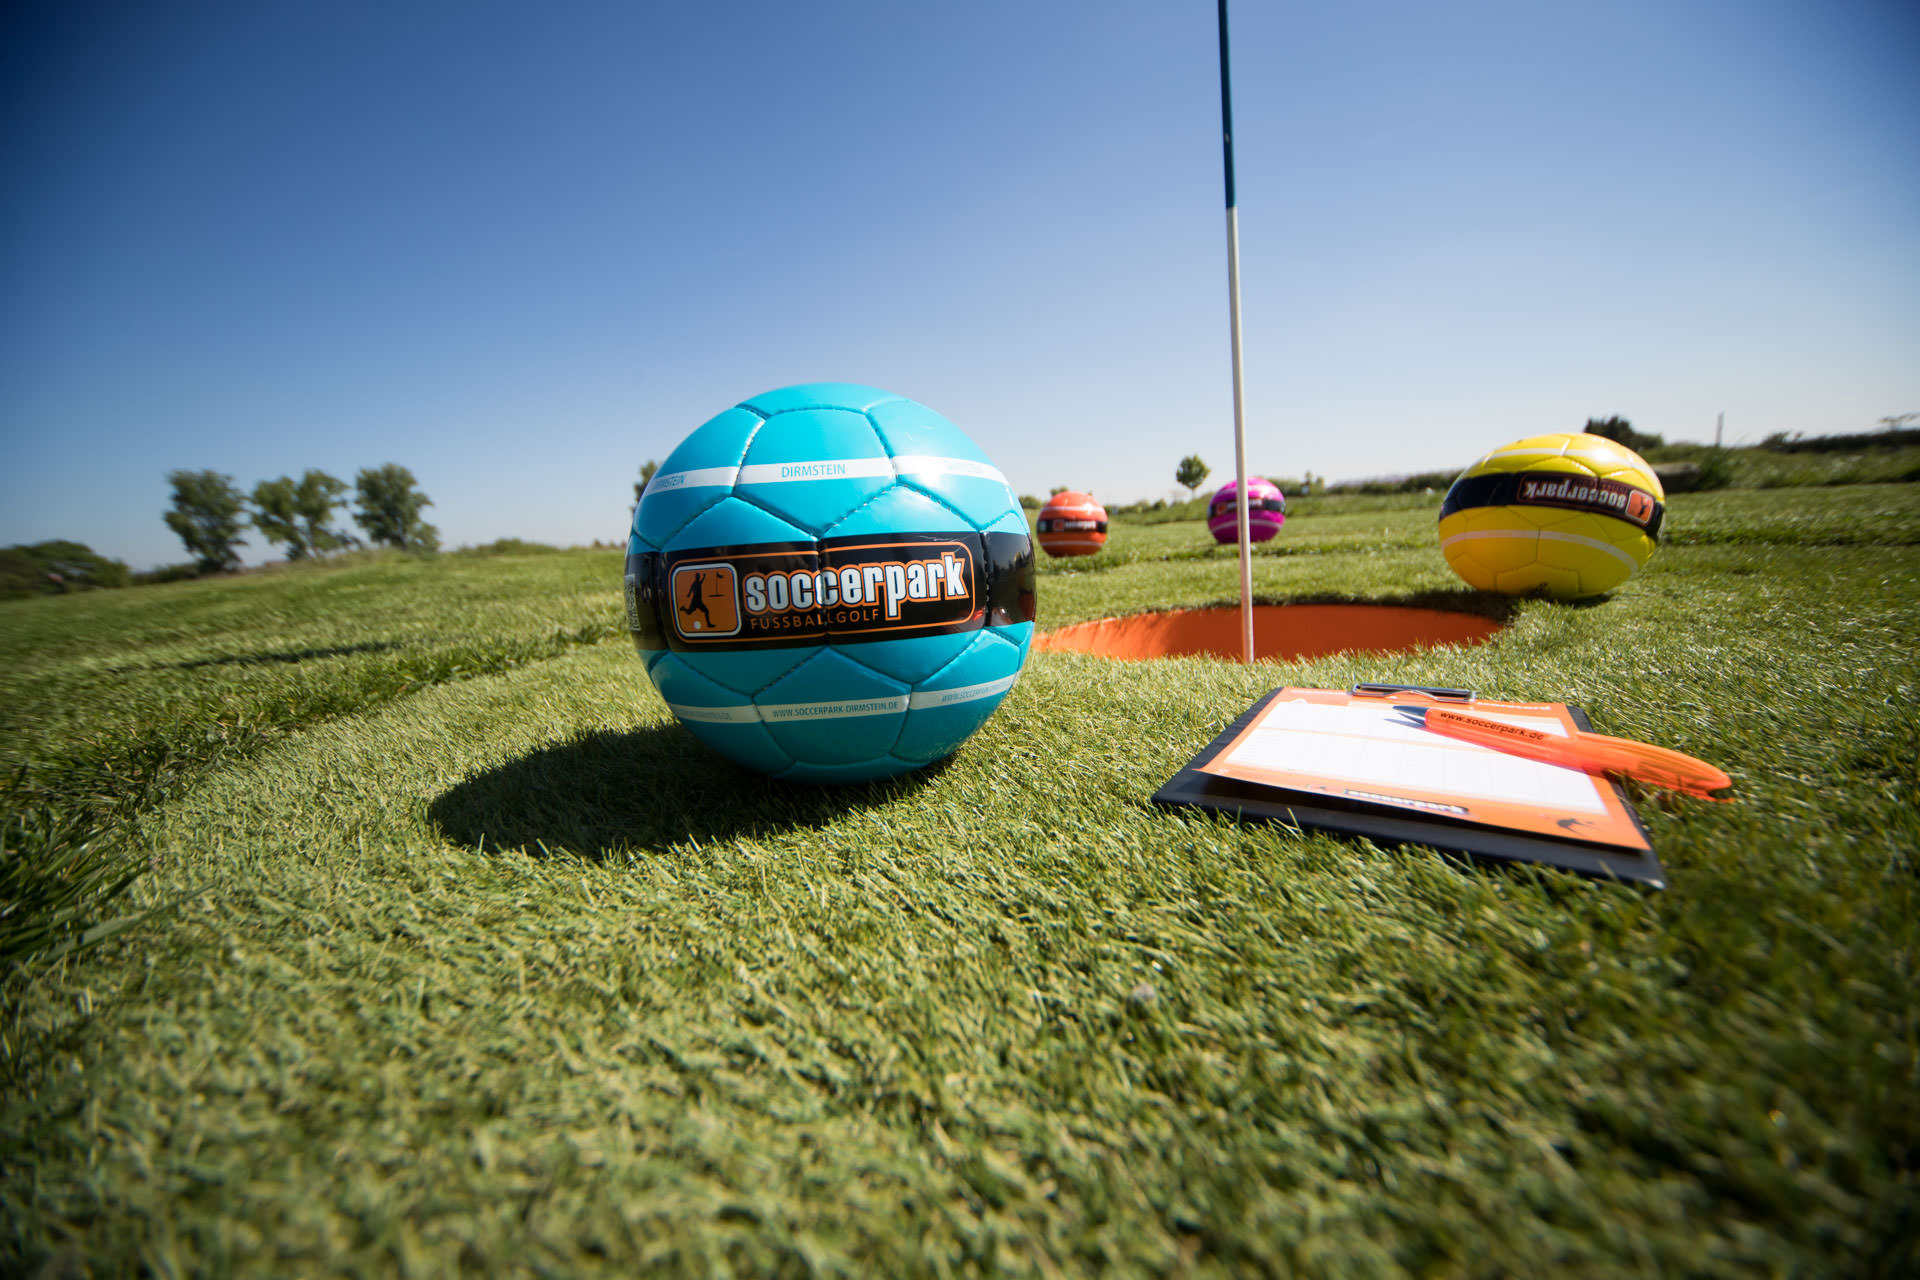 Soccerpark Inzell Fussball Golf Score